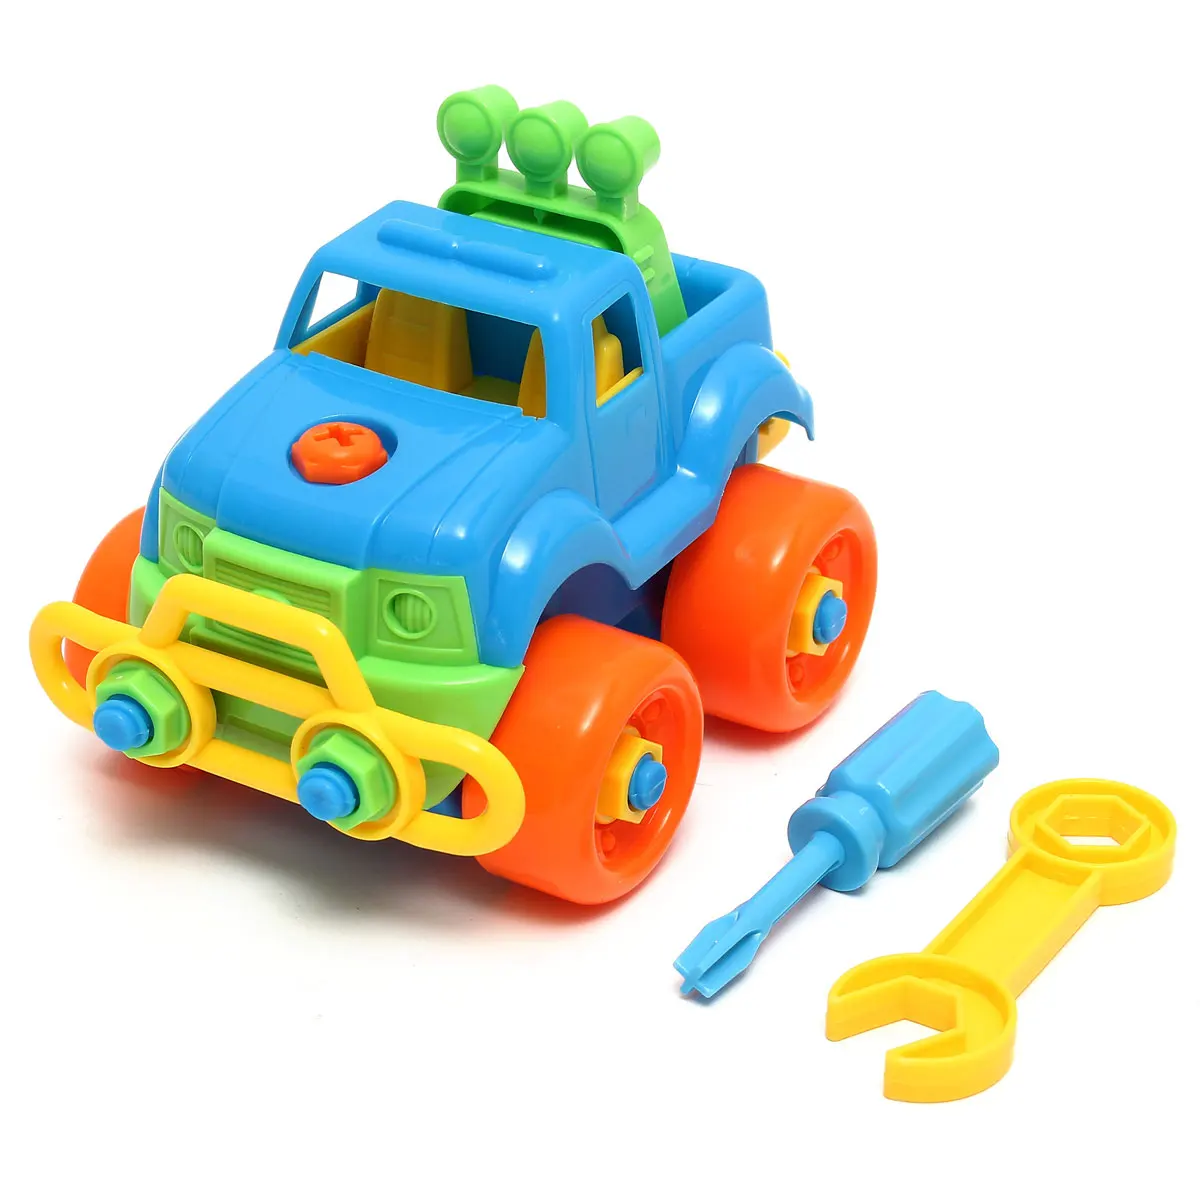 Разборка в сборе Классическая Автомобильная игрушка с отверткой подарок для детей